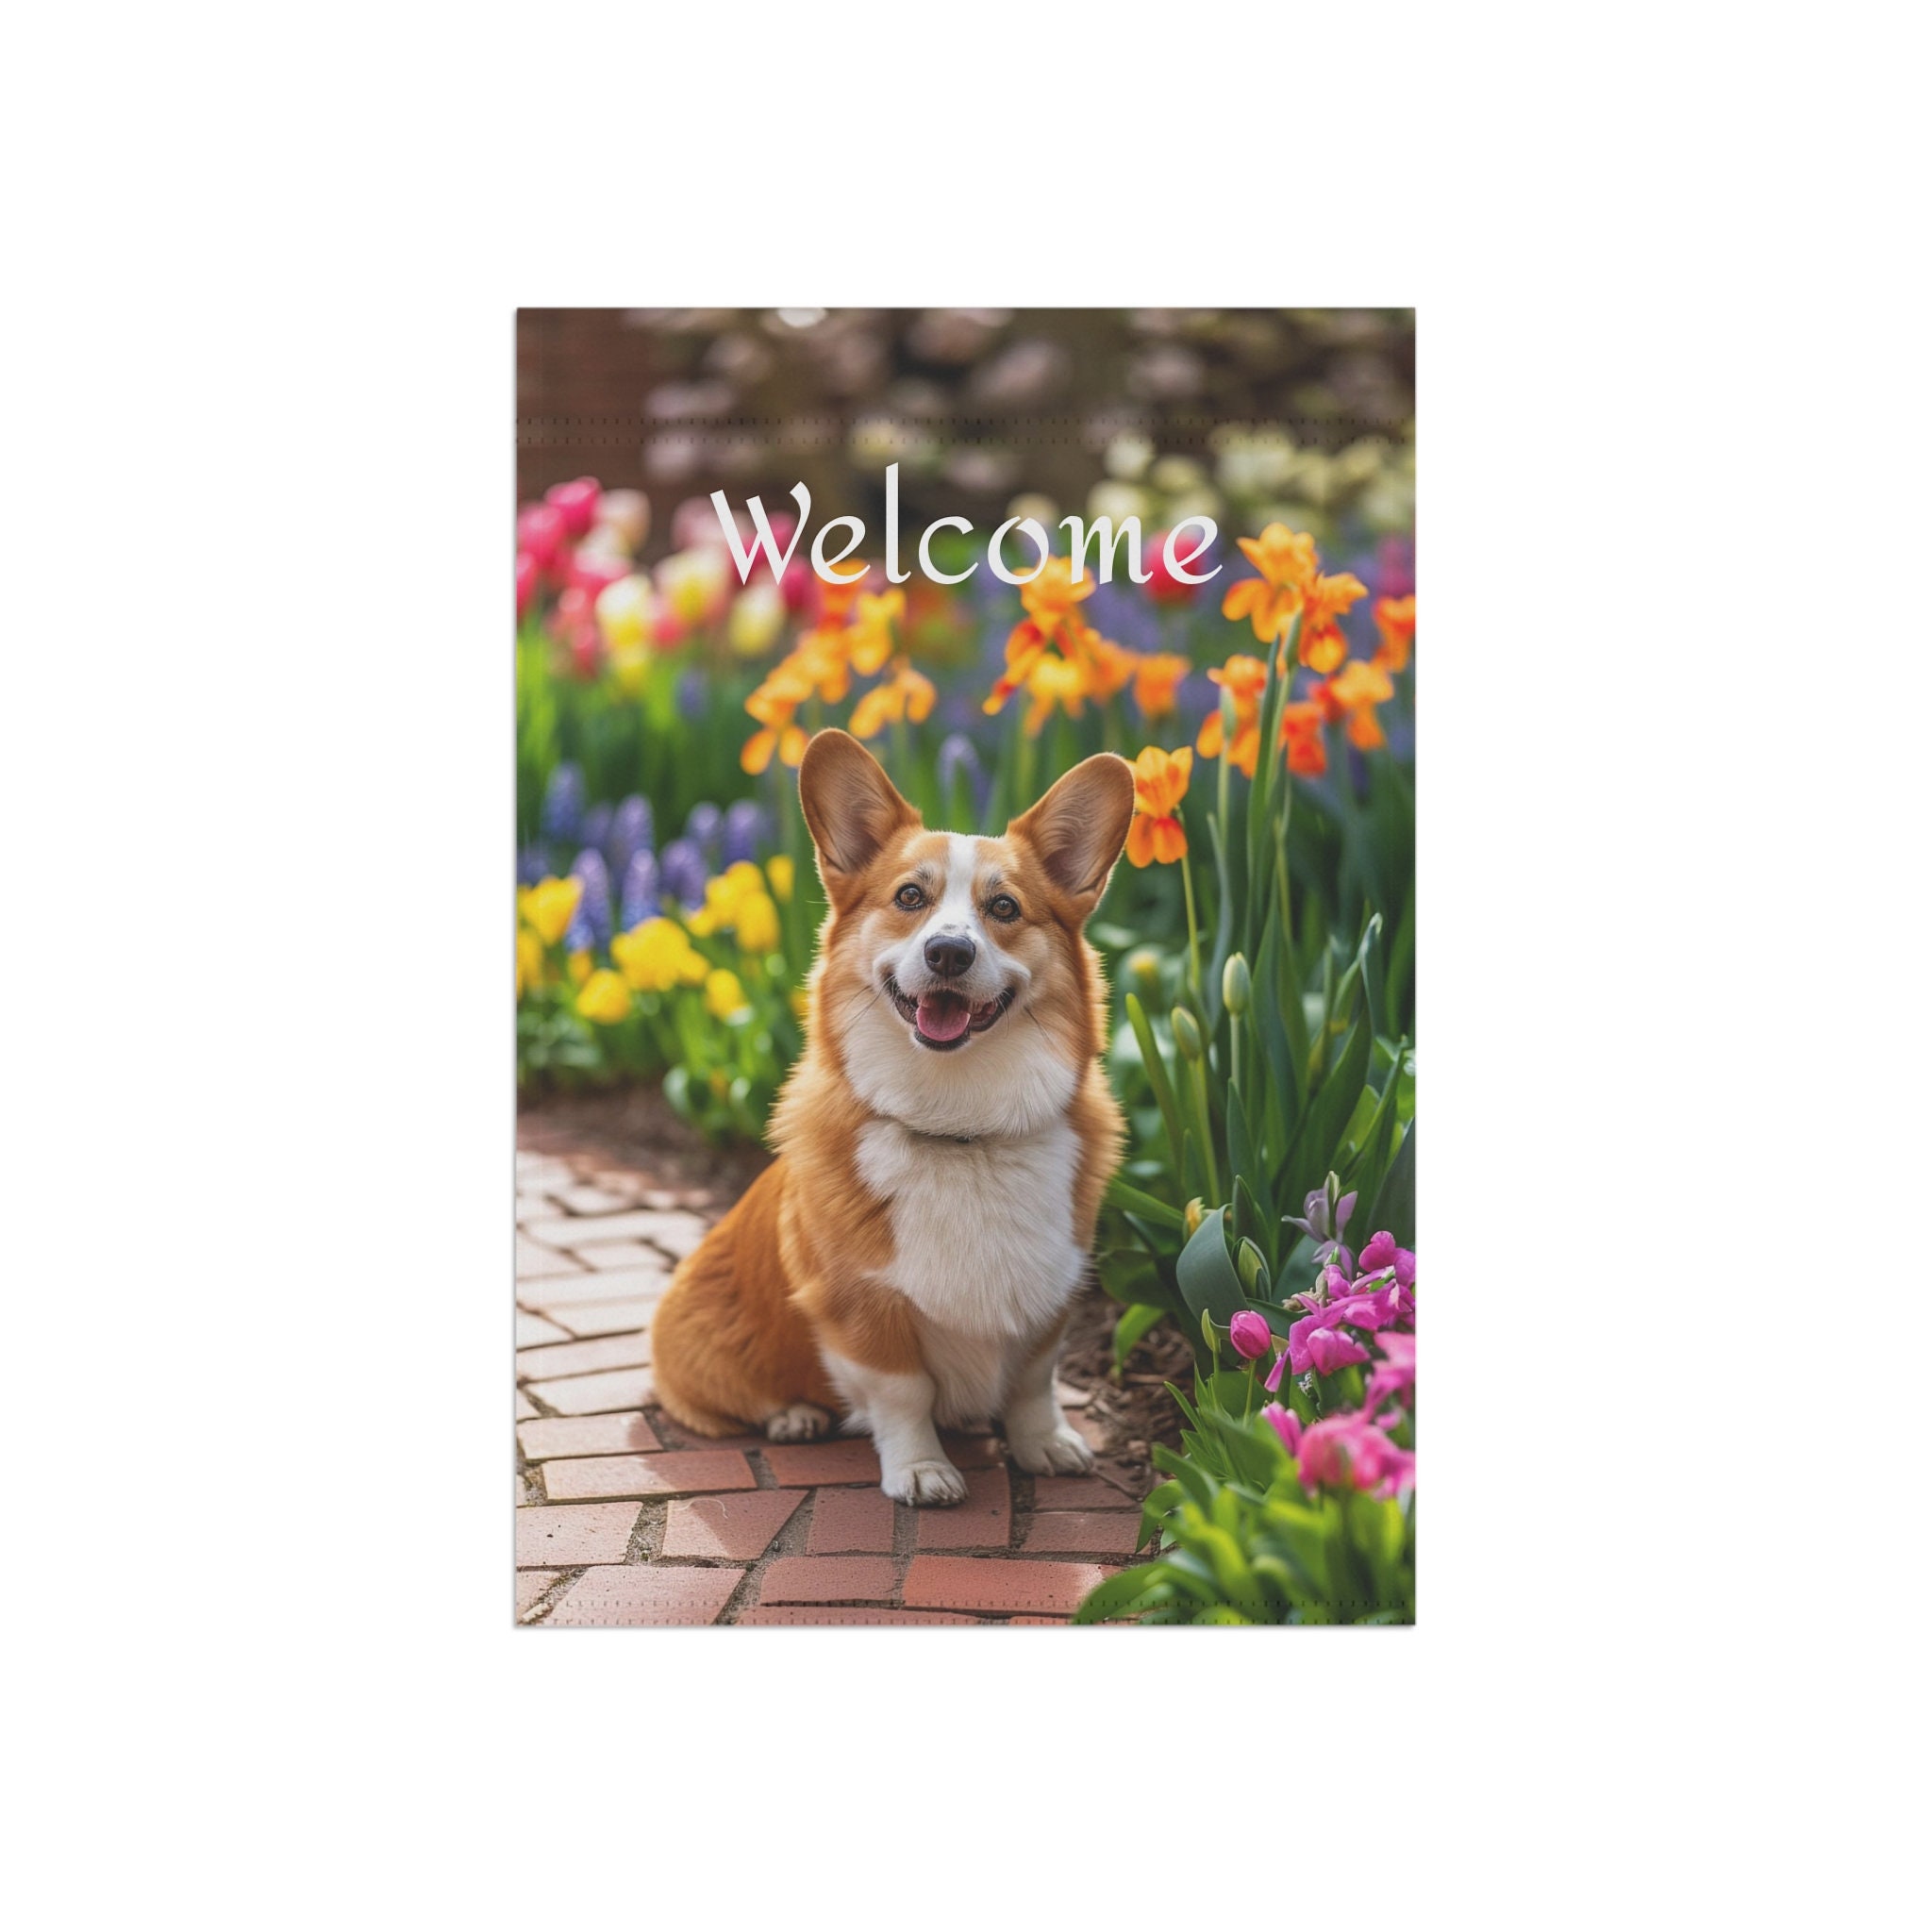 Cute Corgi Garden Flag, Dog Lover Garden Flag